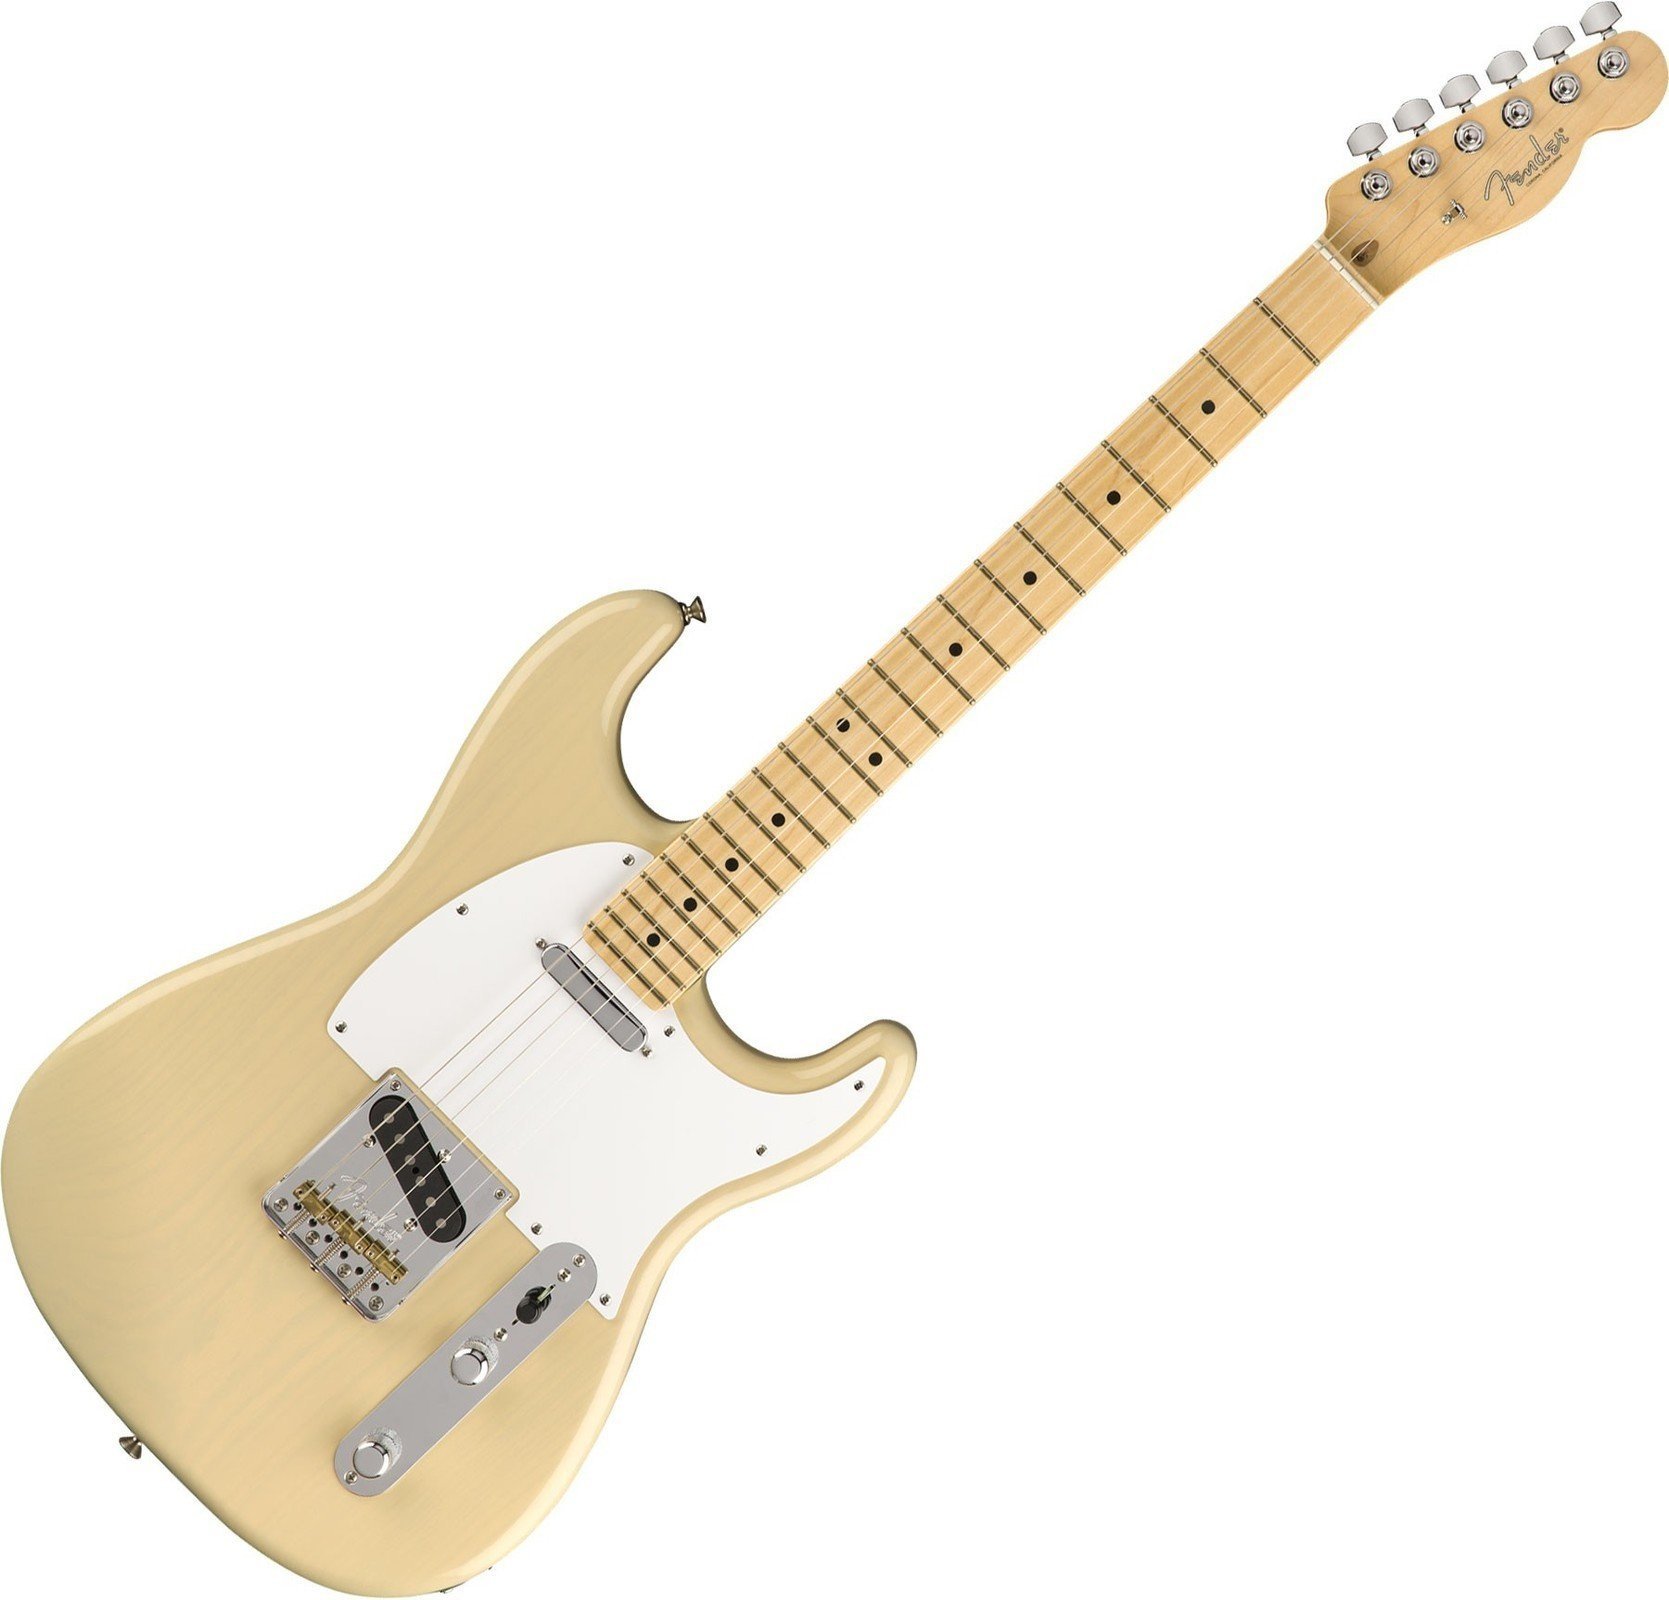 Ηλεκτρική Κιθάρα Fender Limited Whiteguard Stratocaster MN Vintage Blonde